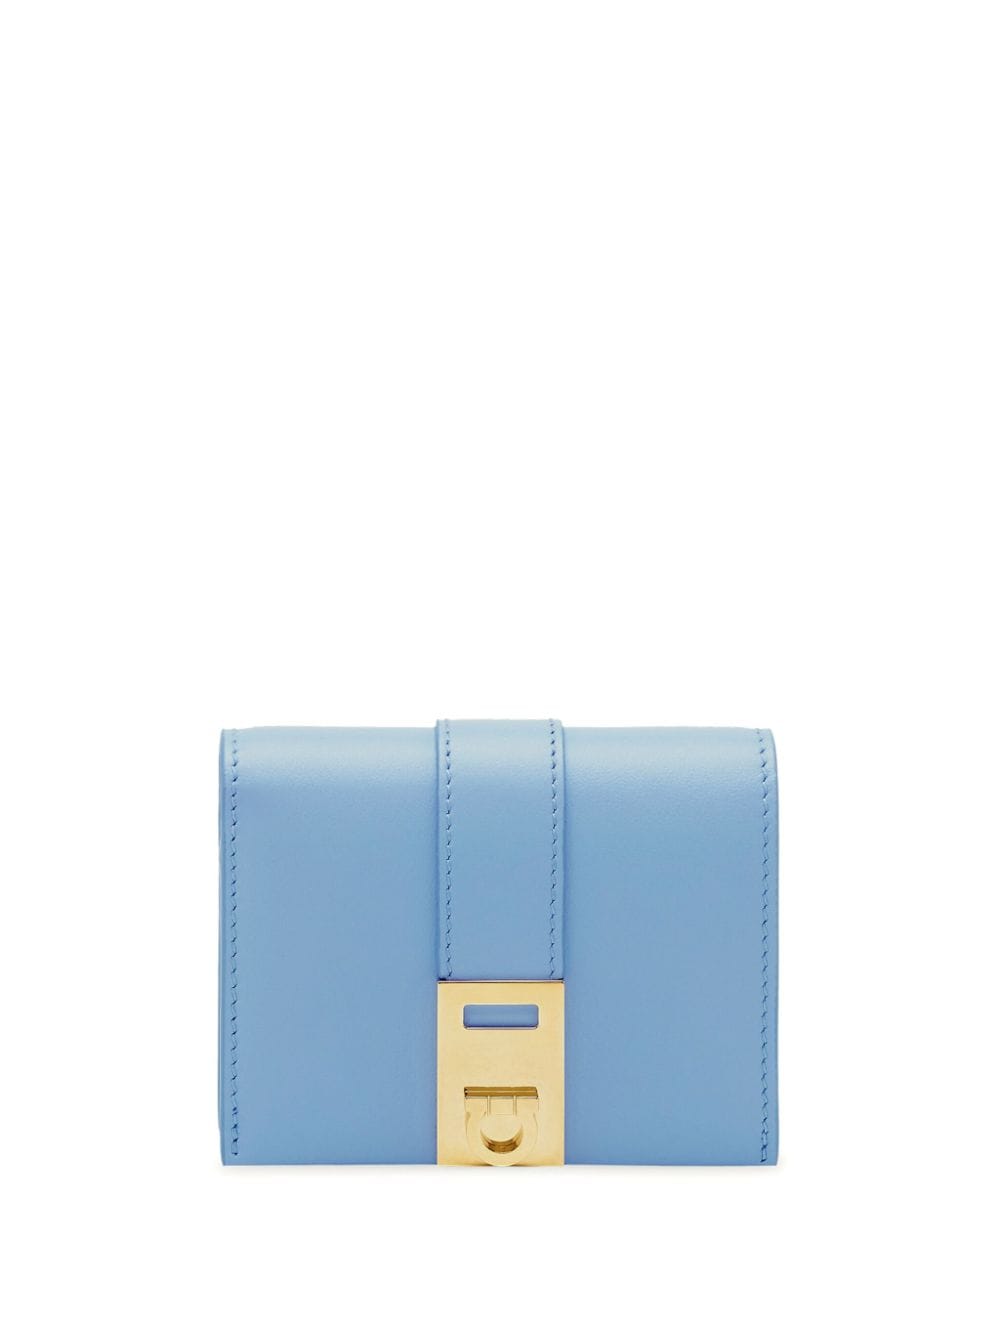 Ferragamo Hug compact wallet - Blau